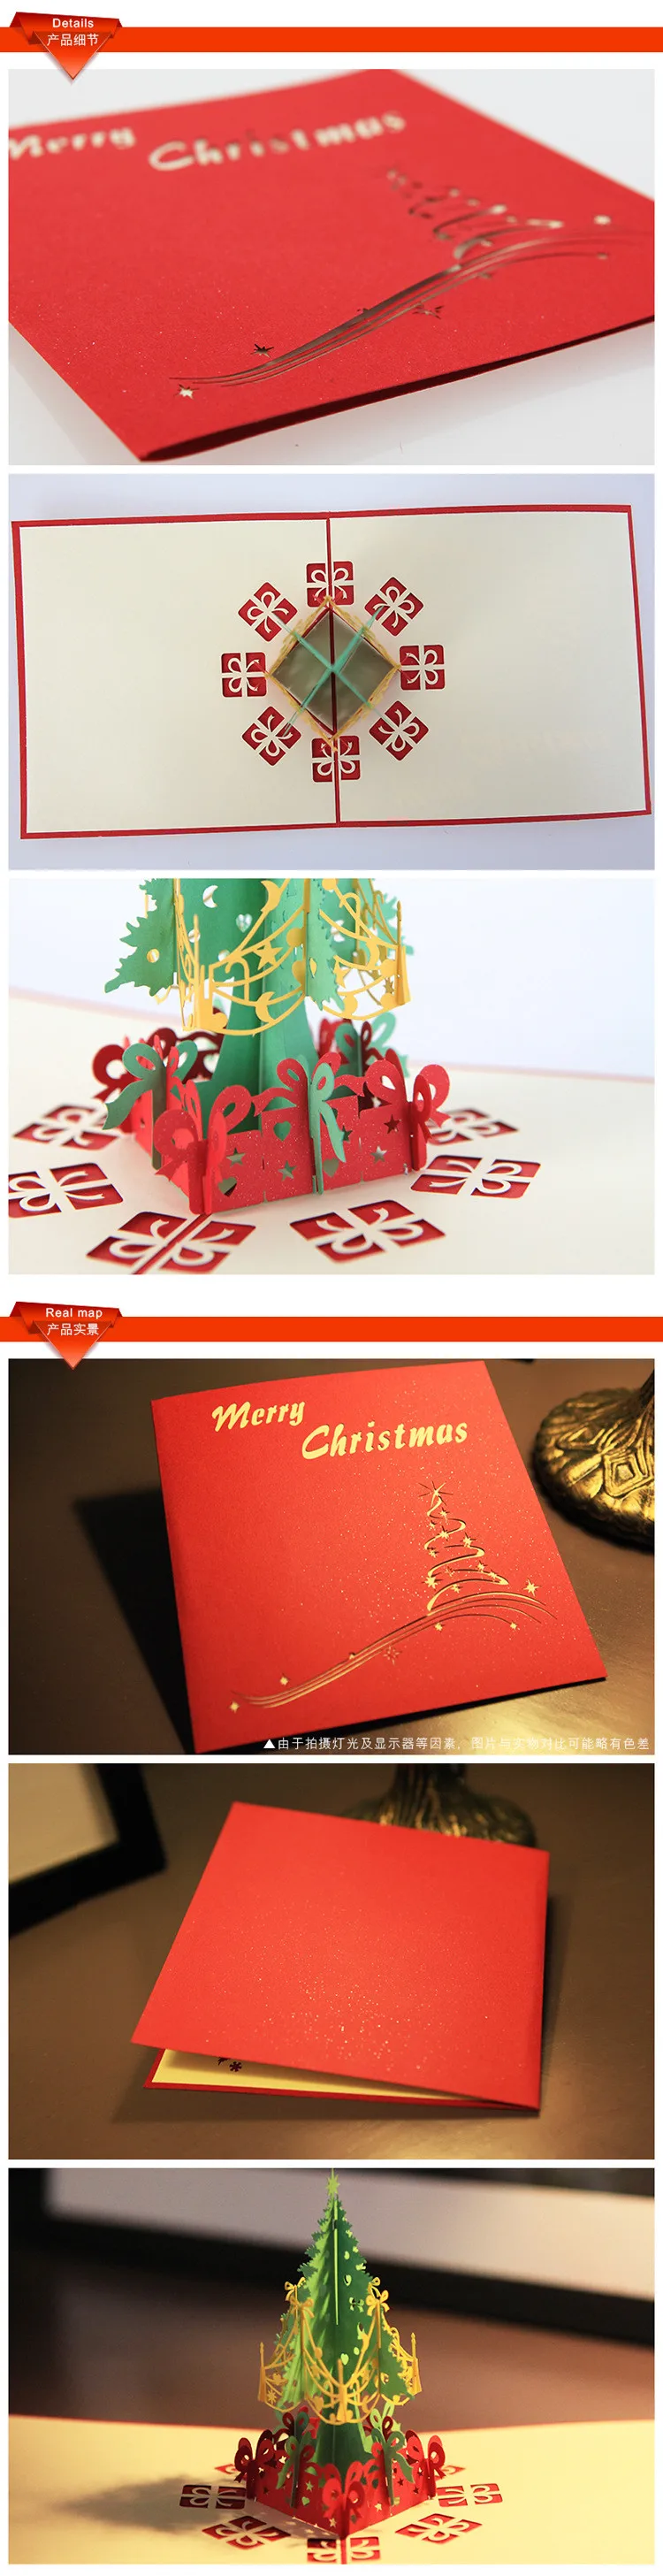 3D с утолщённой меховой опушкой, открытка Merry Christmas дерево поздравительные открытки Почтовые открытки s подарок на день рождения открытка на Рождество благодарственная открытка